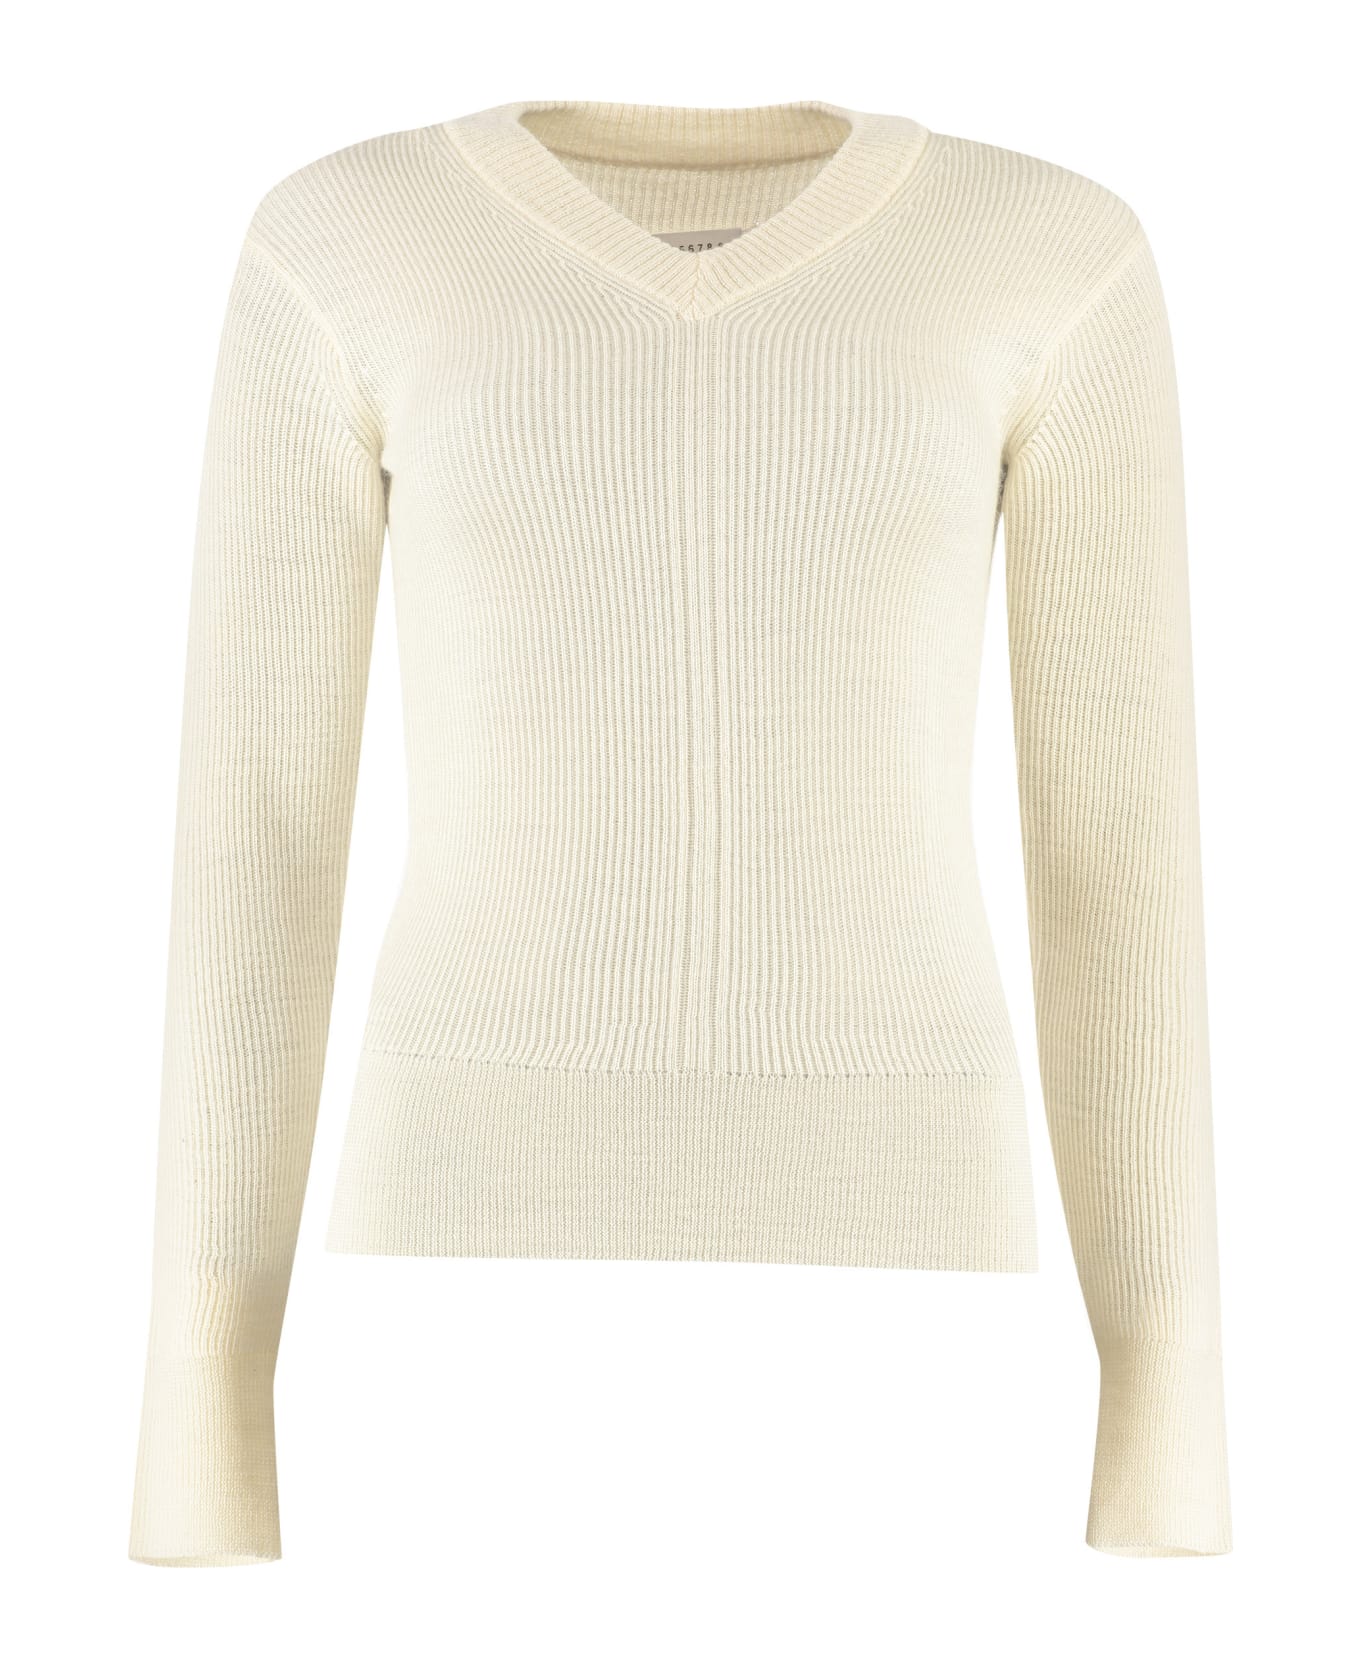 Maison Margiela Ribbed Sweater - White ニットウェア